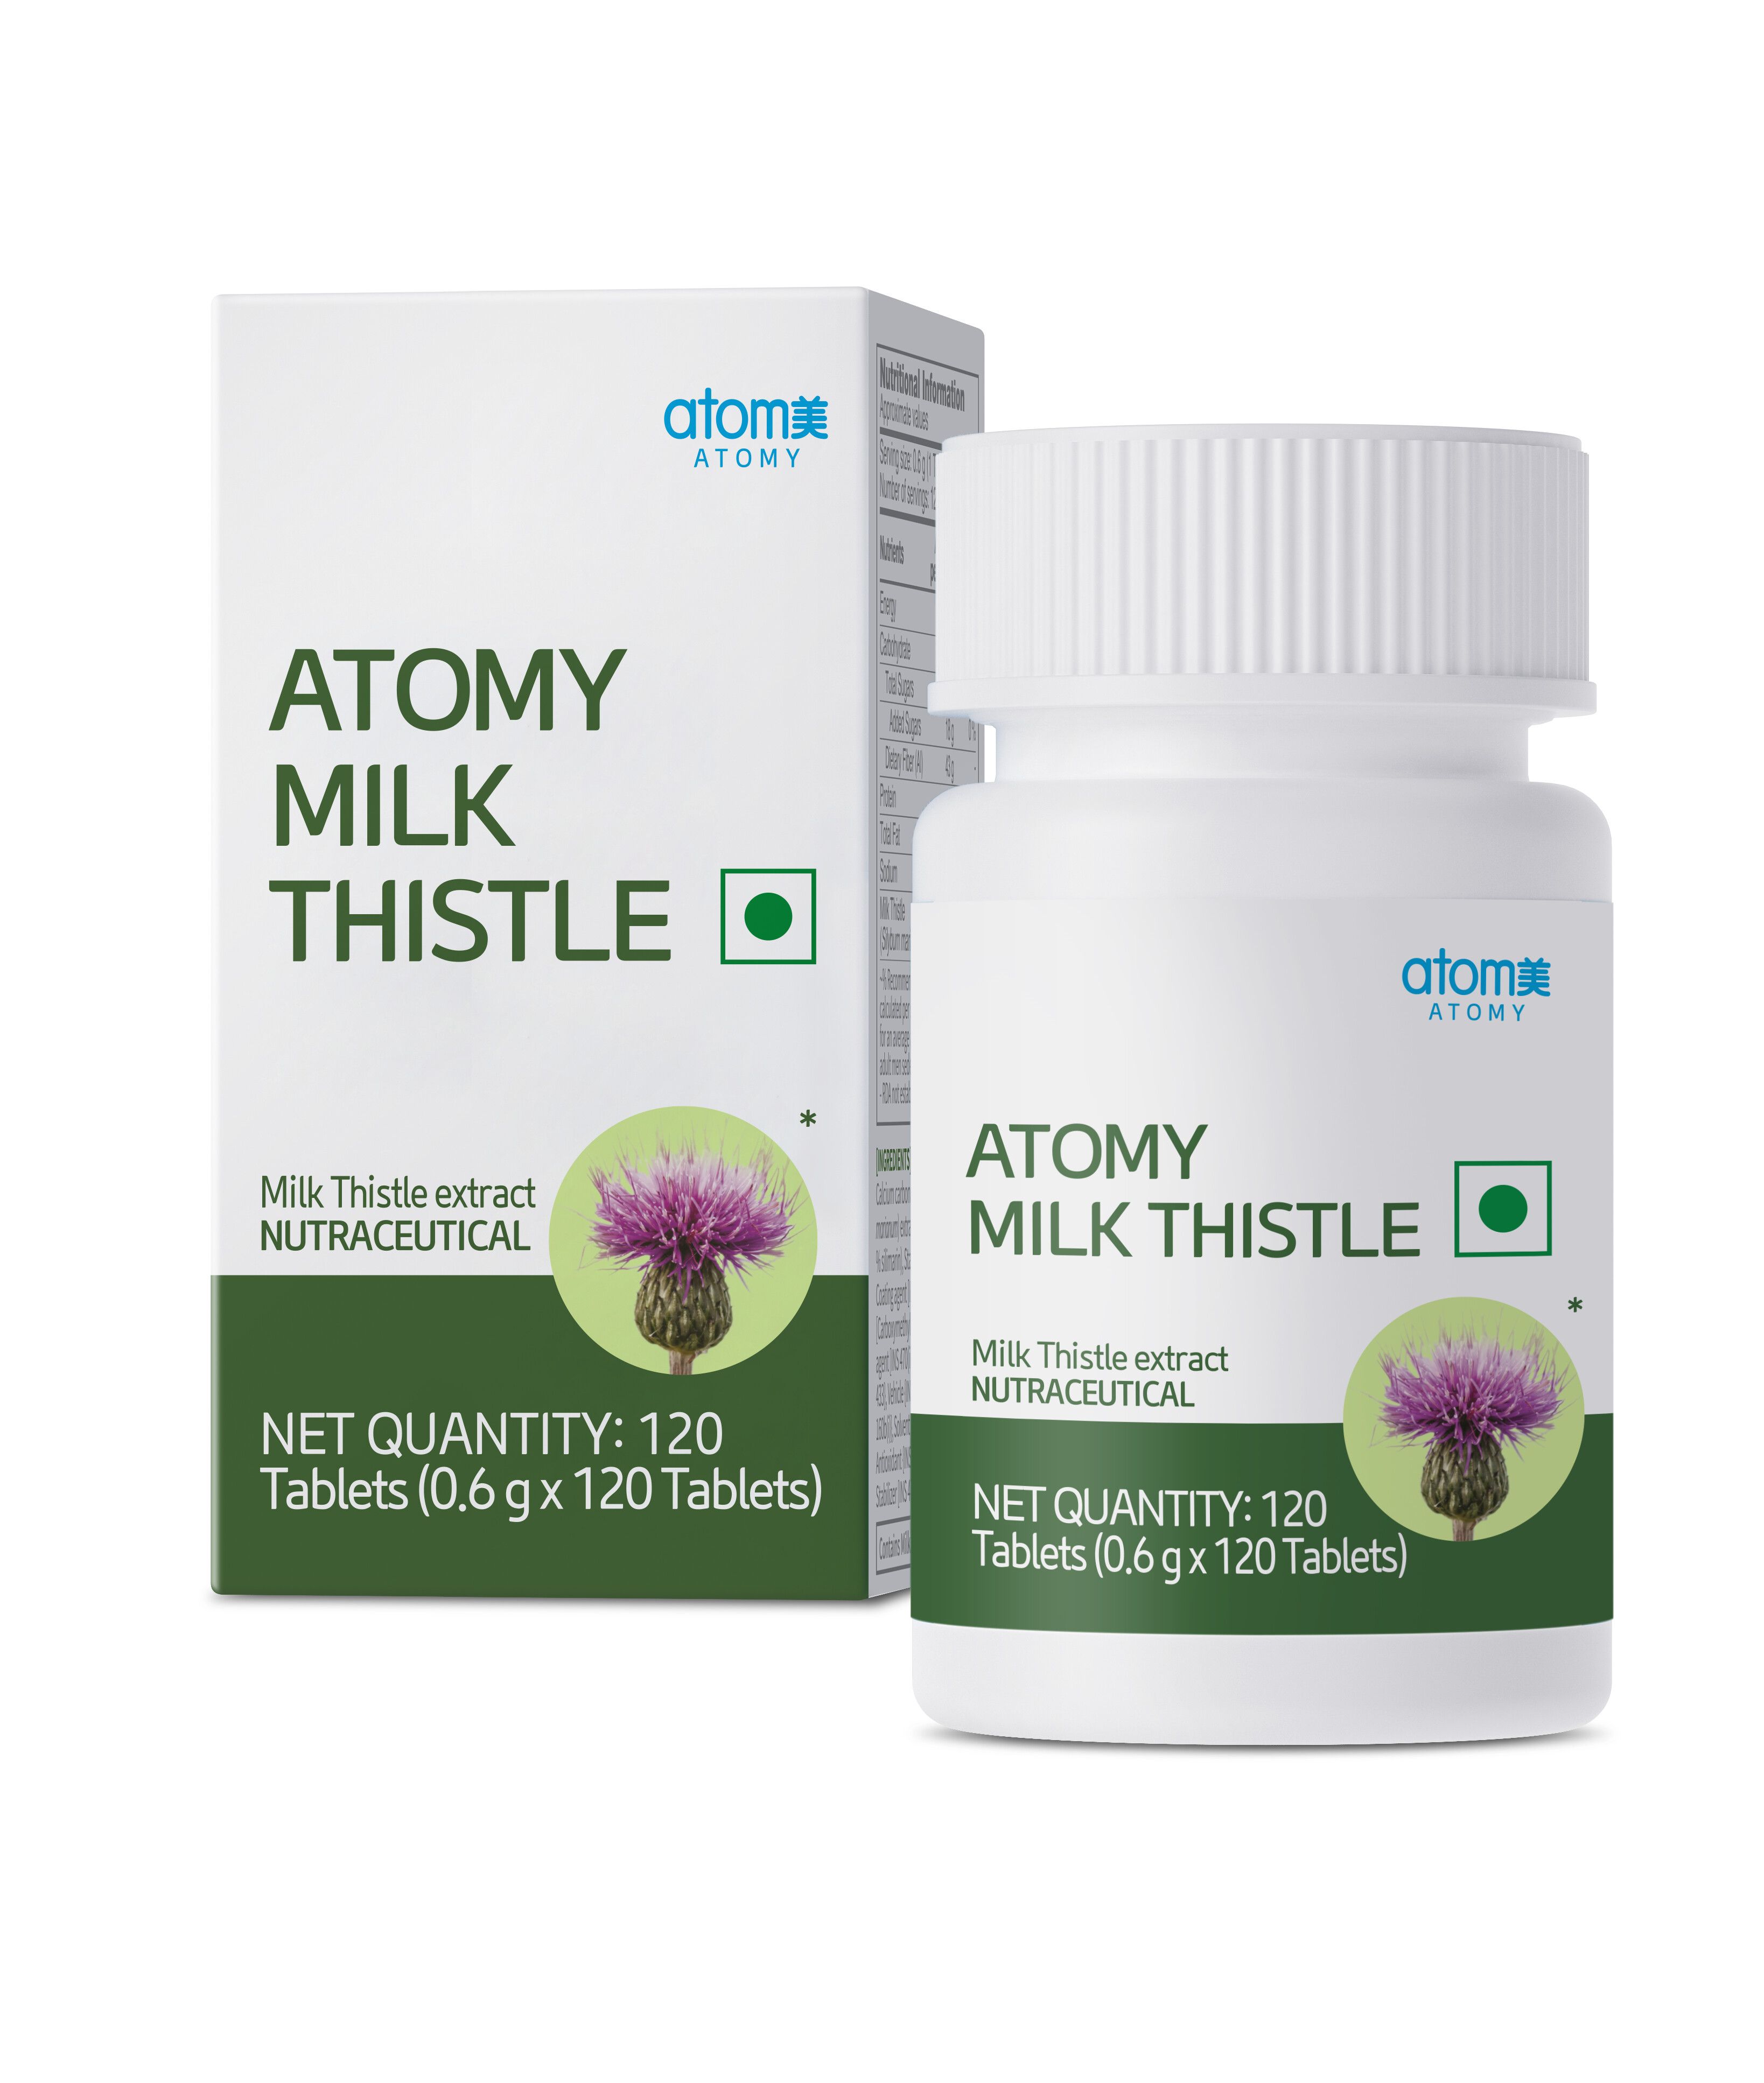 Atomy Milk Thistle | Atomy India